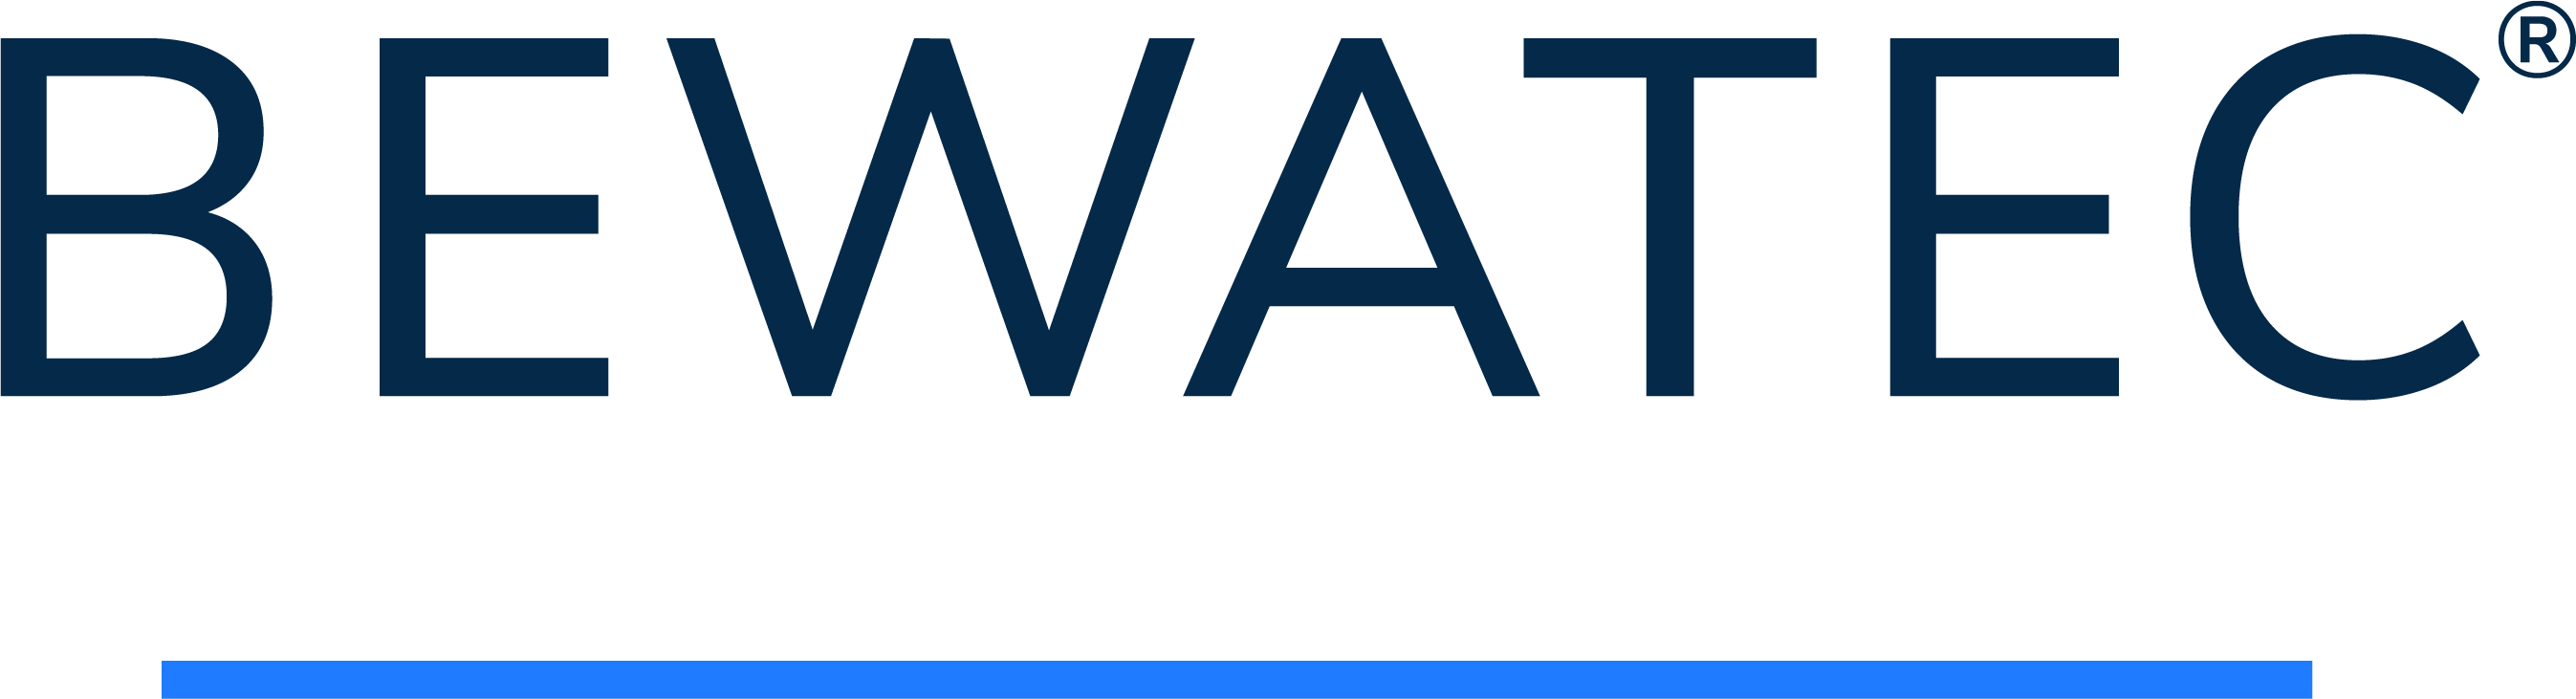 BEWATEC Logo 2021